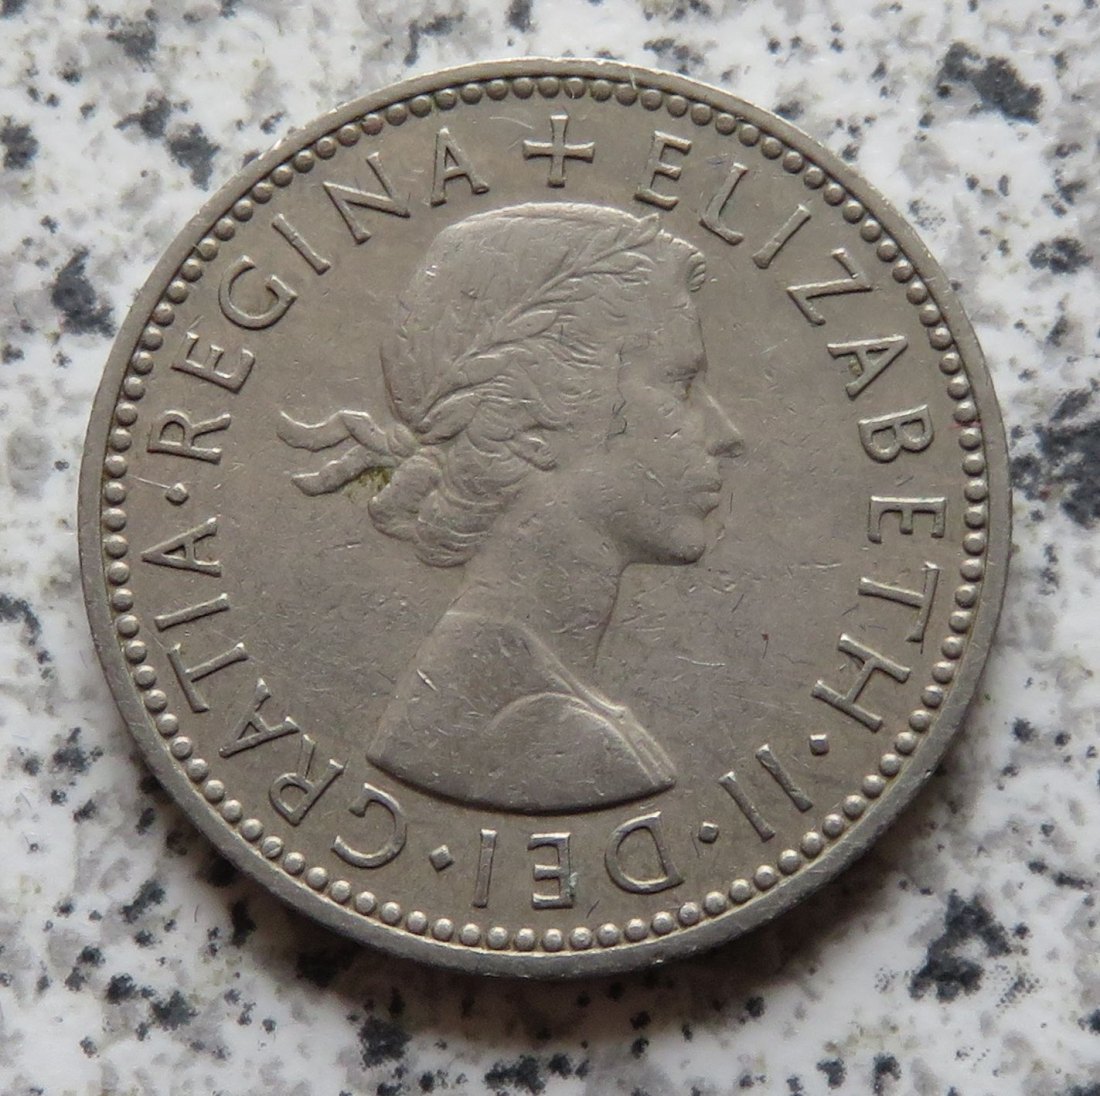  Großbritannien 1 Shilling 1955, Schottisch   